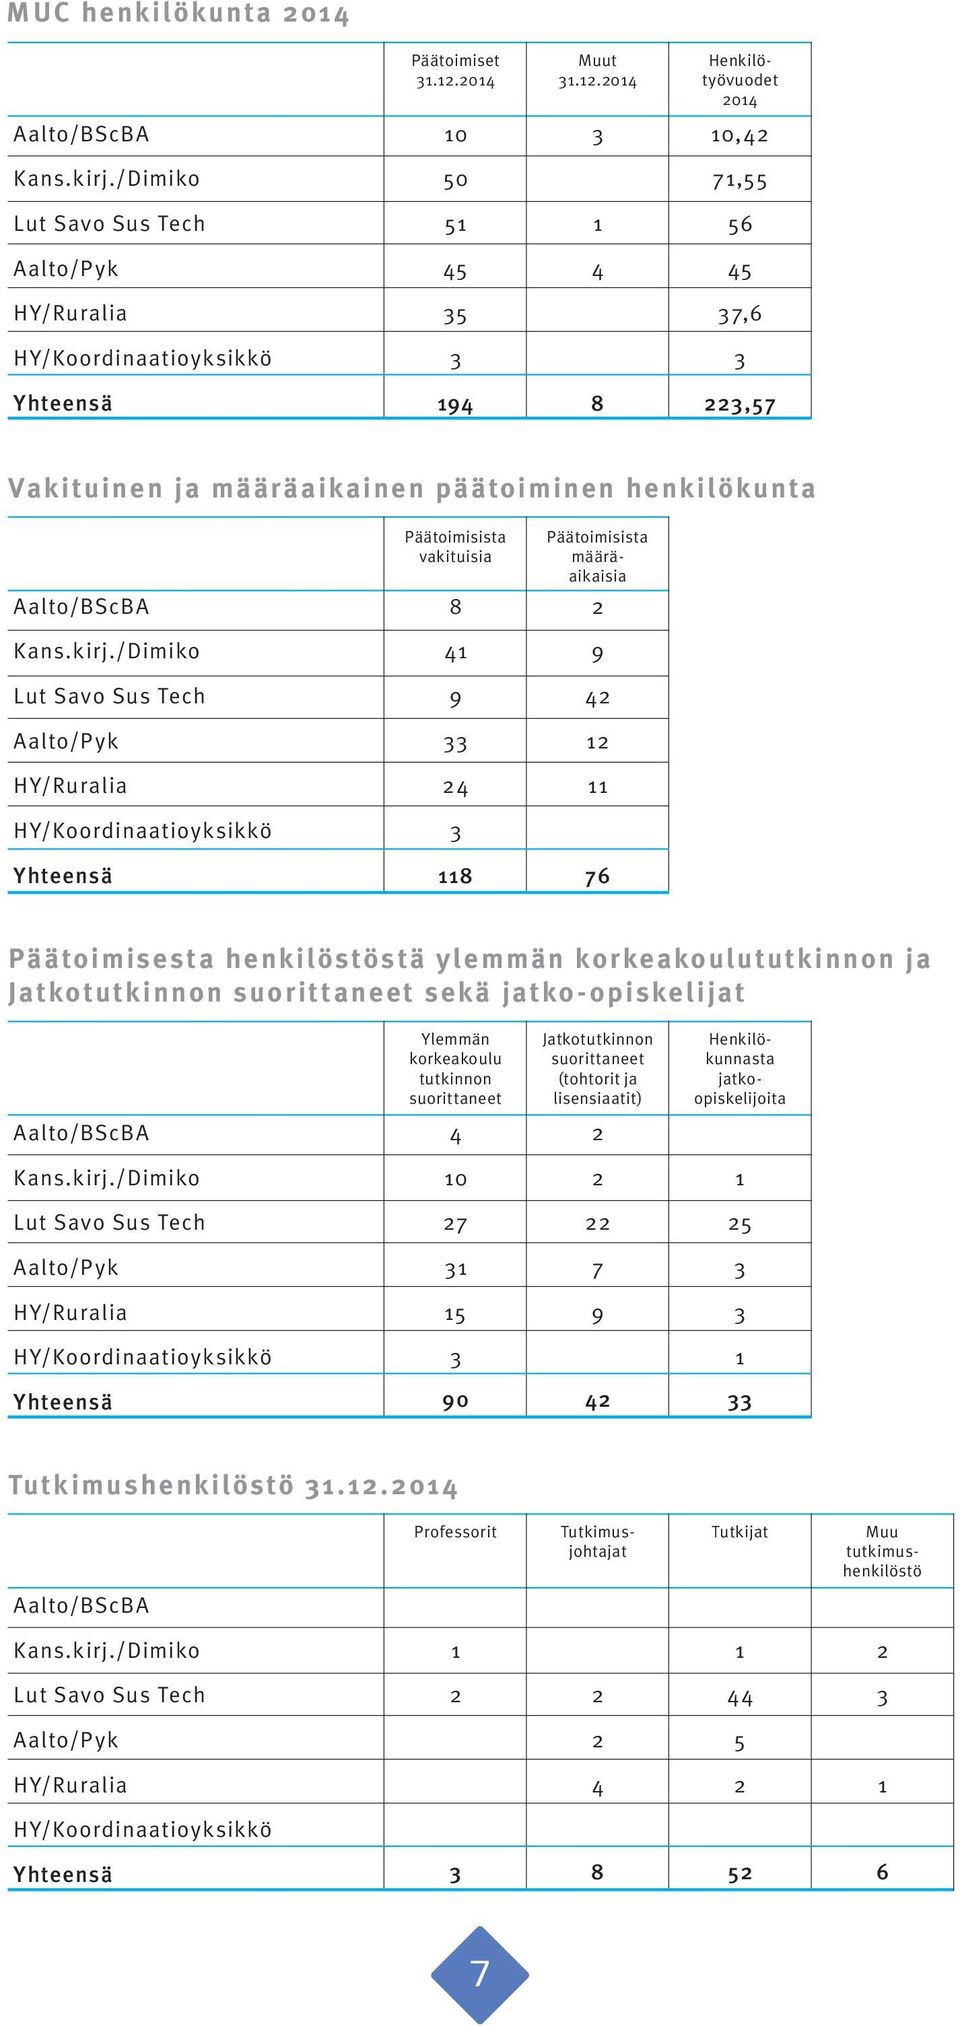 /Dimiko Lut Savo Sus Tech Aalto/Pyk HY/Ruralia HY/Koordinaatioyksikkö Päätoimisista vakituisia 8 9 8 Päätoimisista määräaikaisia 9 76 Päätoimisesta henkilöstöstä ylemmän korkeakoulututkinnon ja